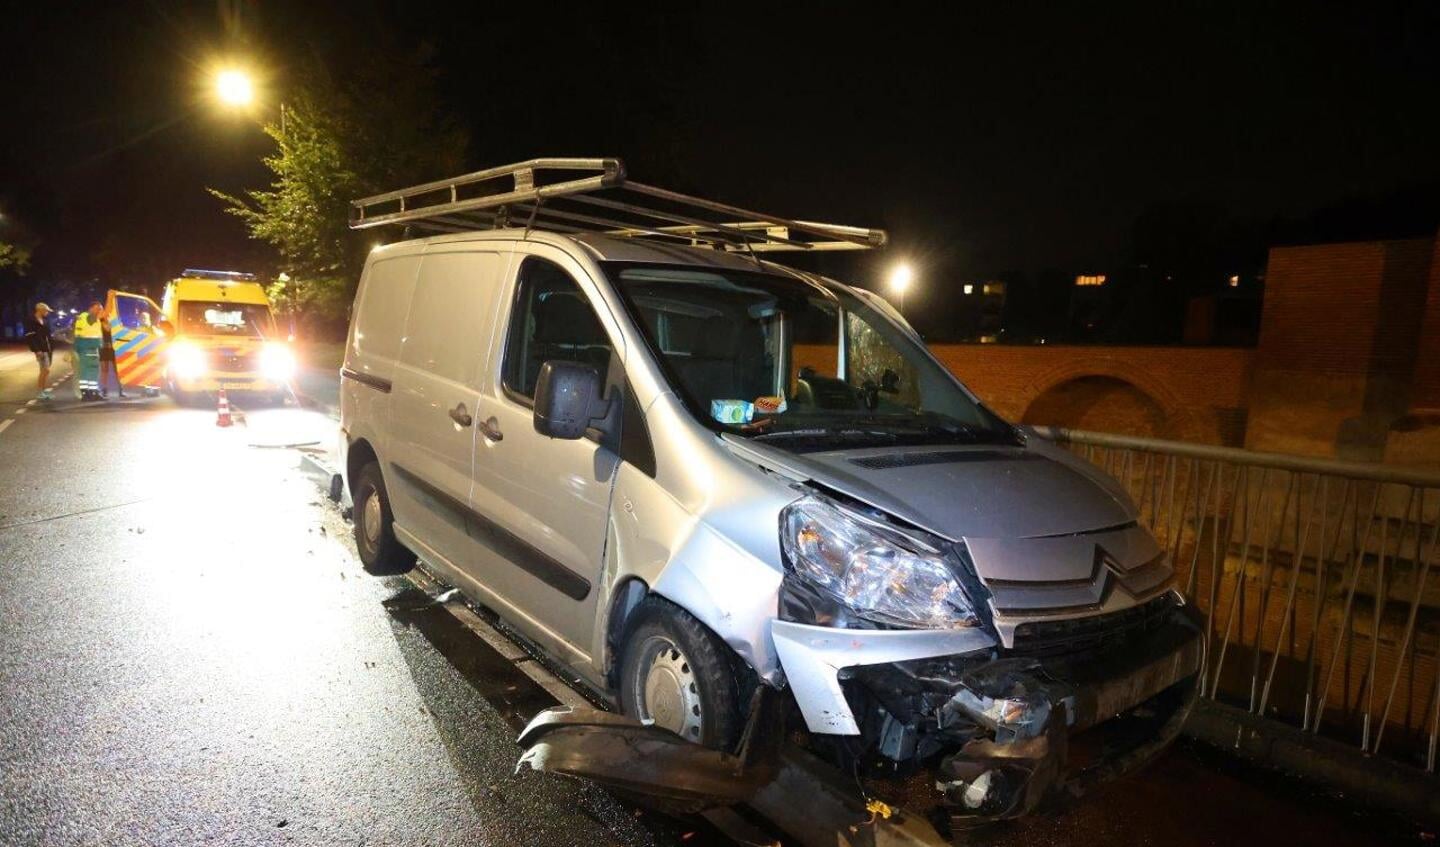 Een automobilist onder invloed heeft zaterdagavond voor veel schade gezorgd bij een frontale aanrijding tussen twee voertuigen aan de Hekellaan in Den Bosch.